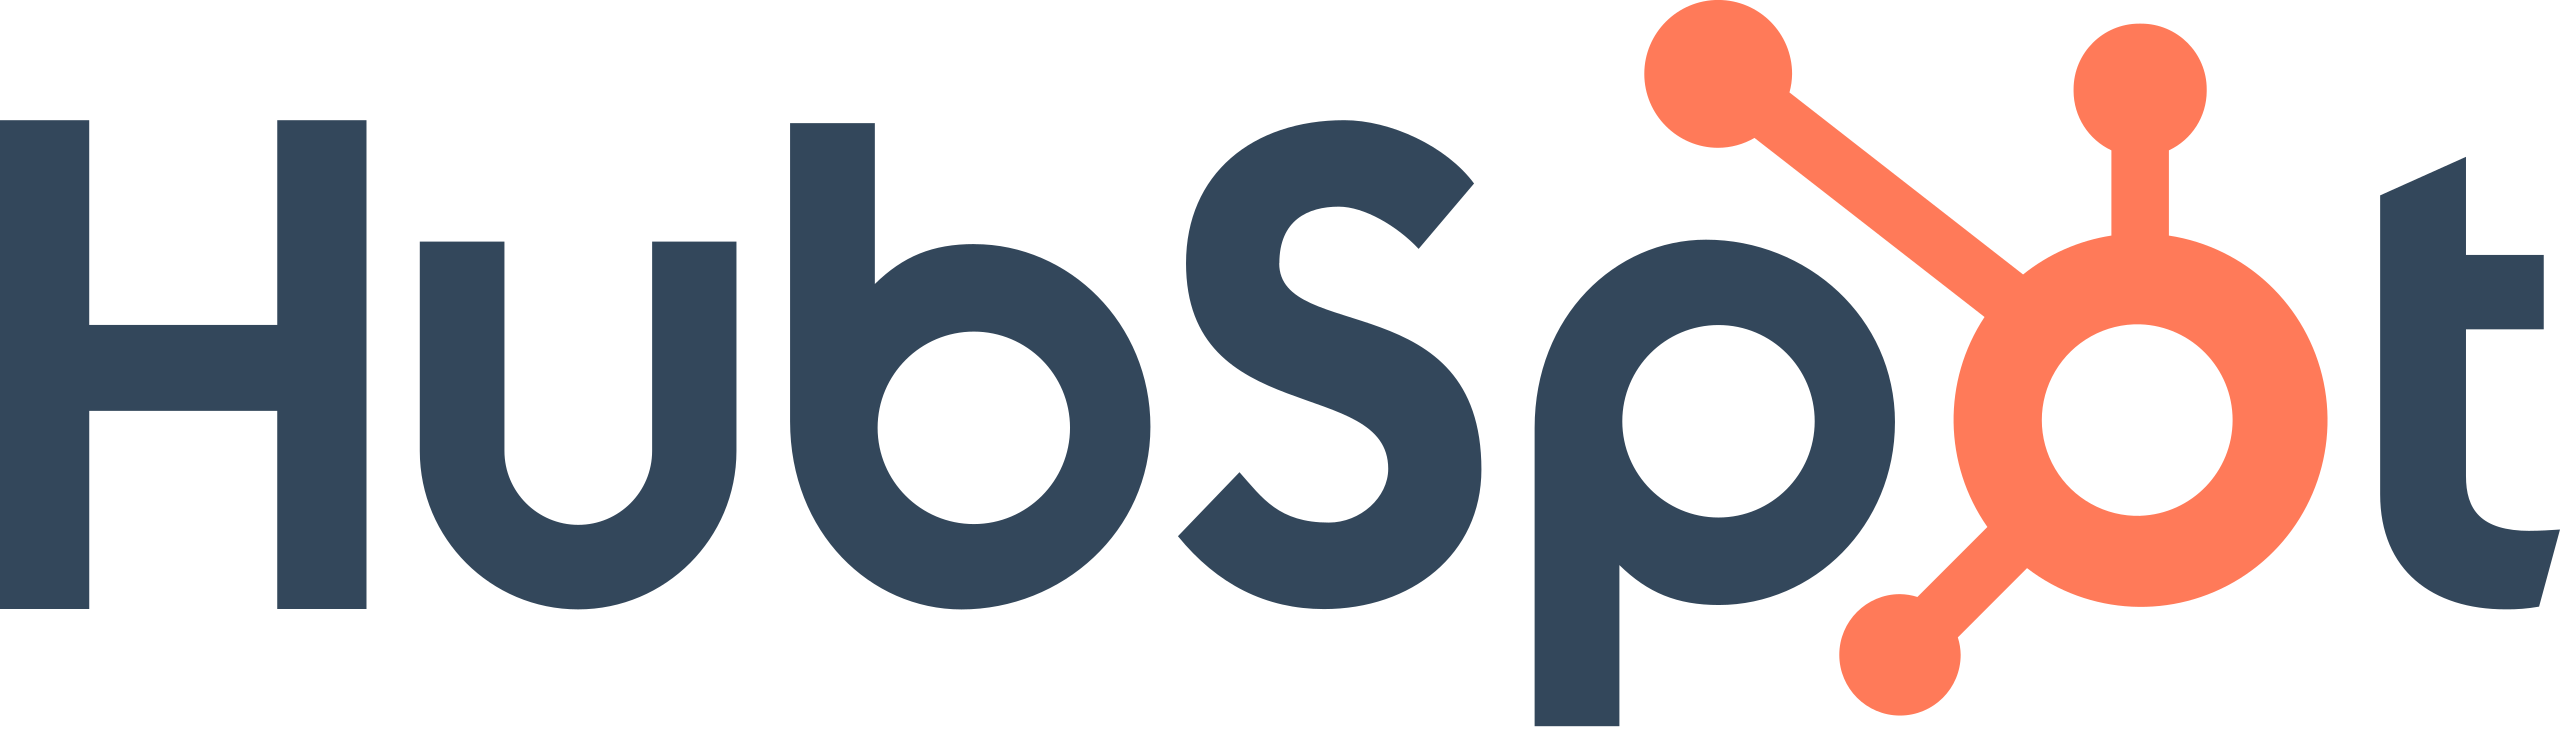 Hubspot Solution Partner logo